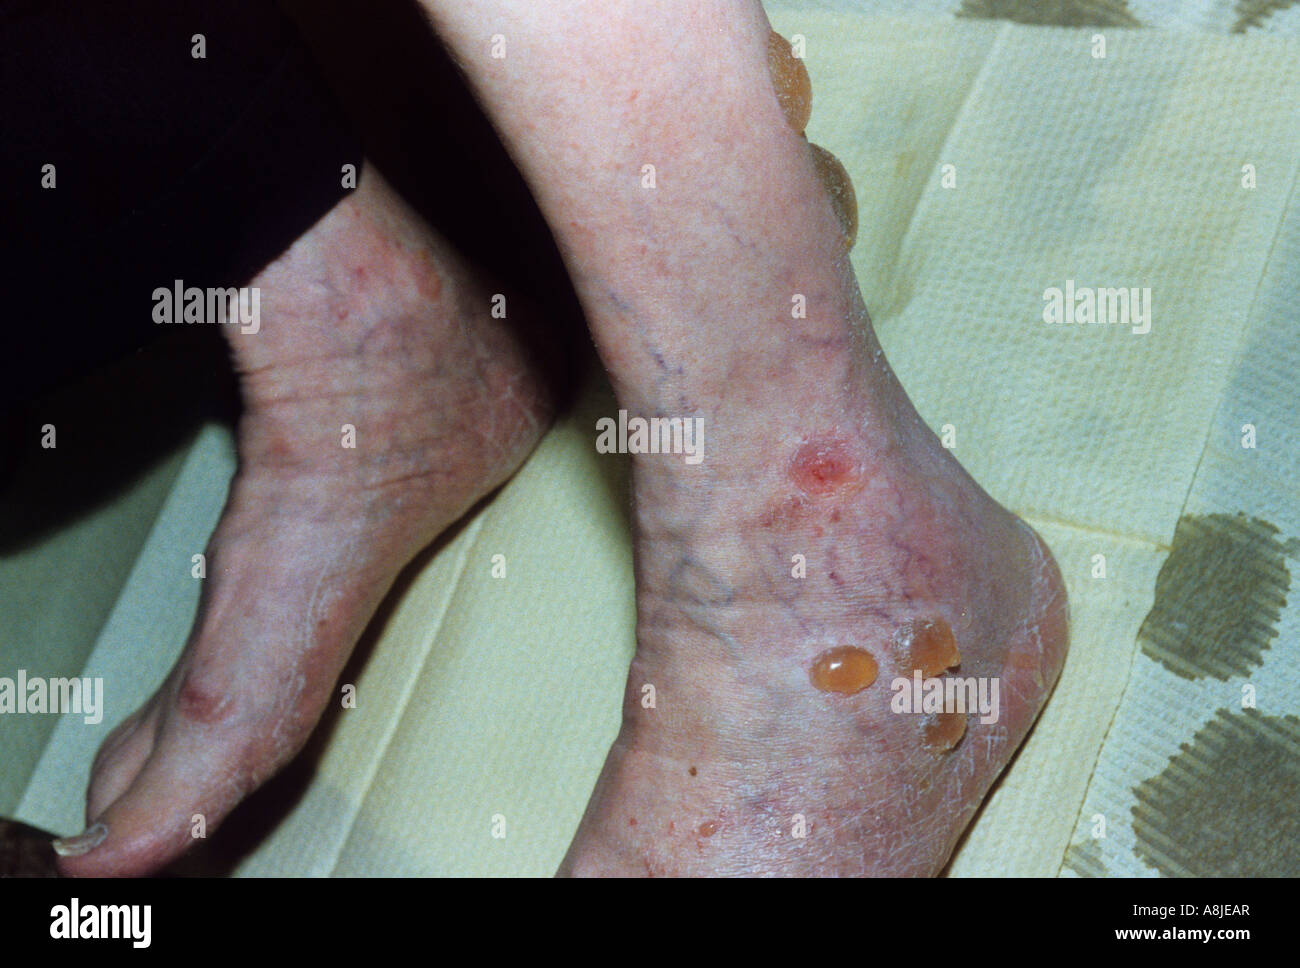 Bläschen verursacht durch Diabetes Mellitus am Bein. Stockfoto